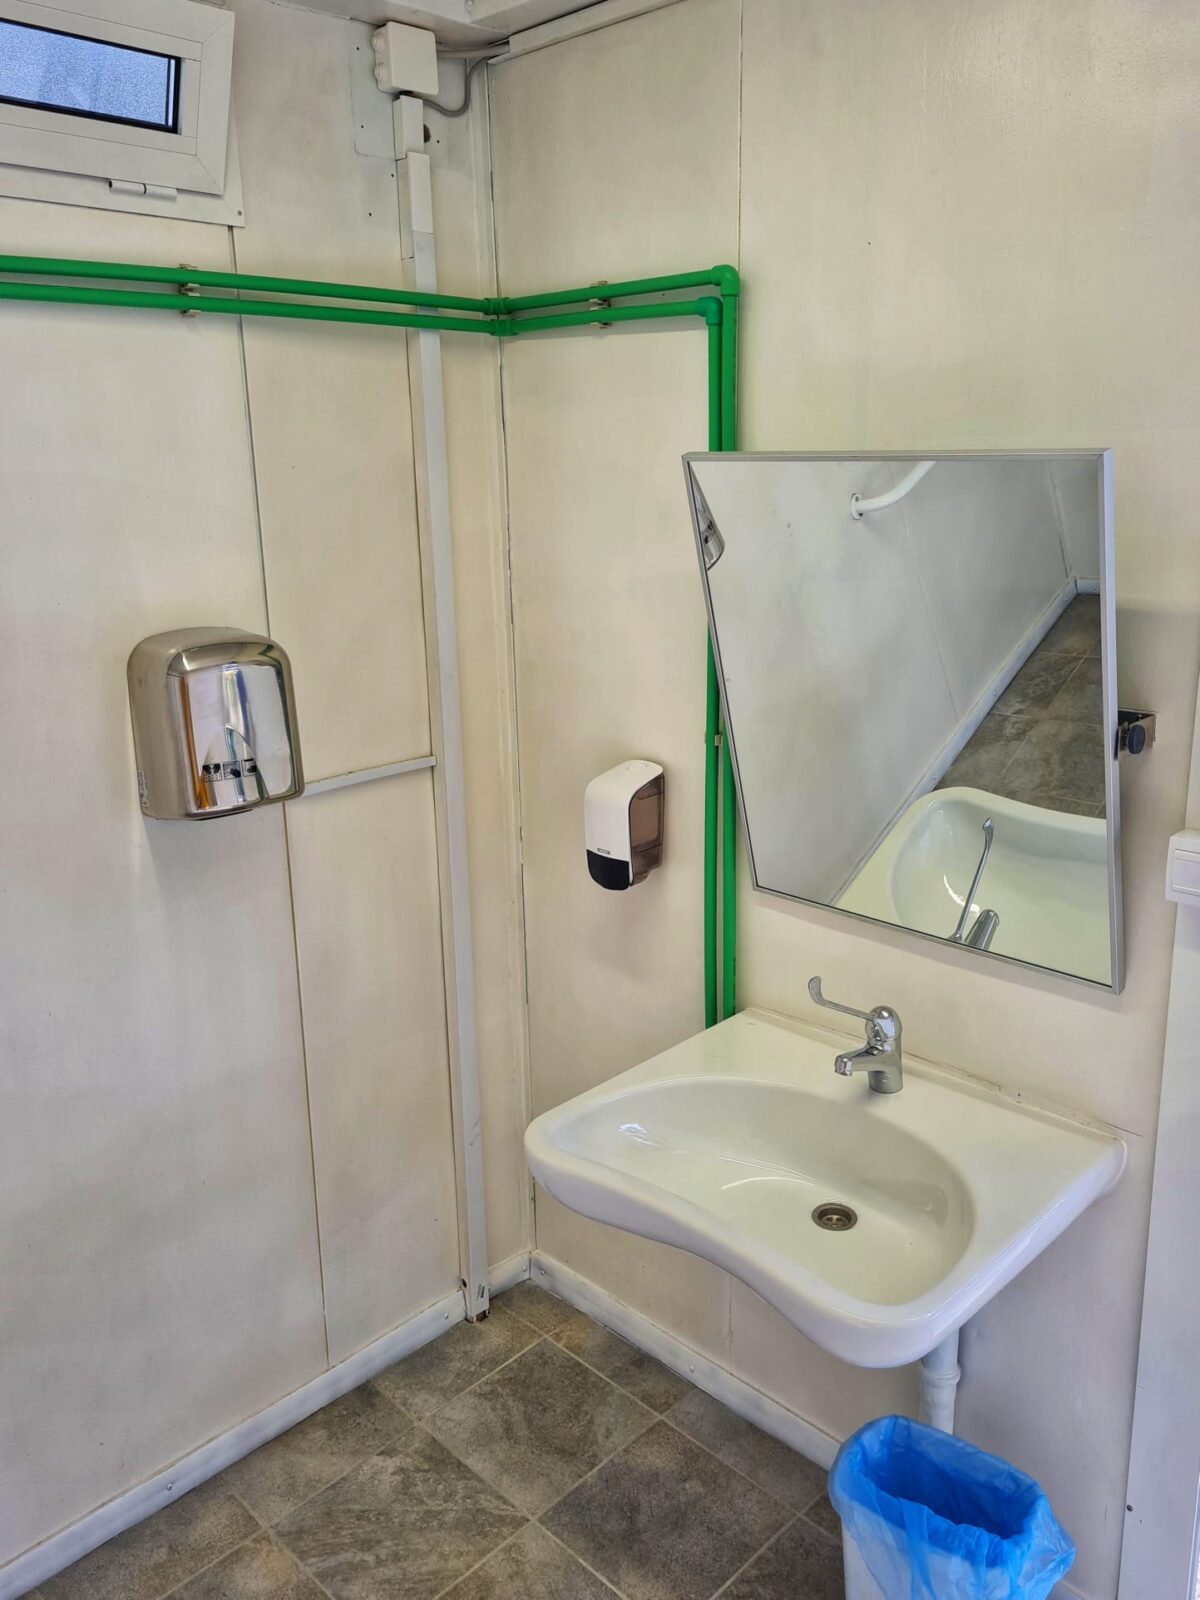 icici wc sanitarni svor (2)